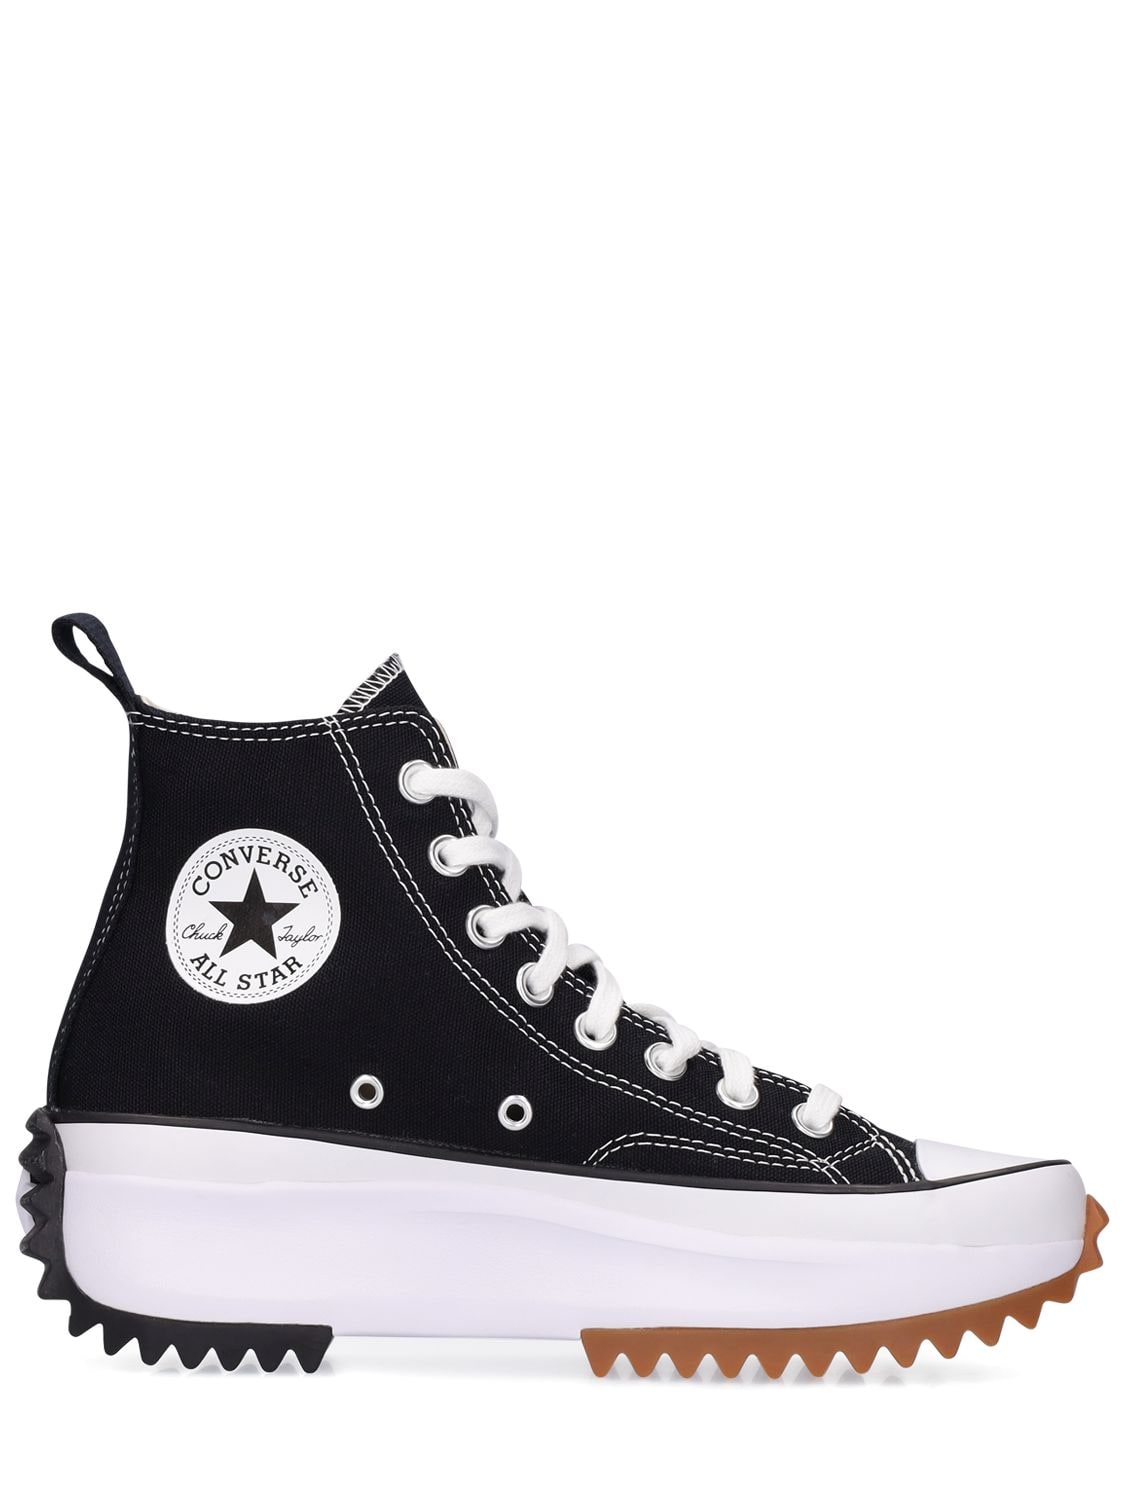 Converse - Run star high sneakers - | Luisaviaroma